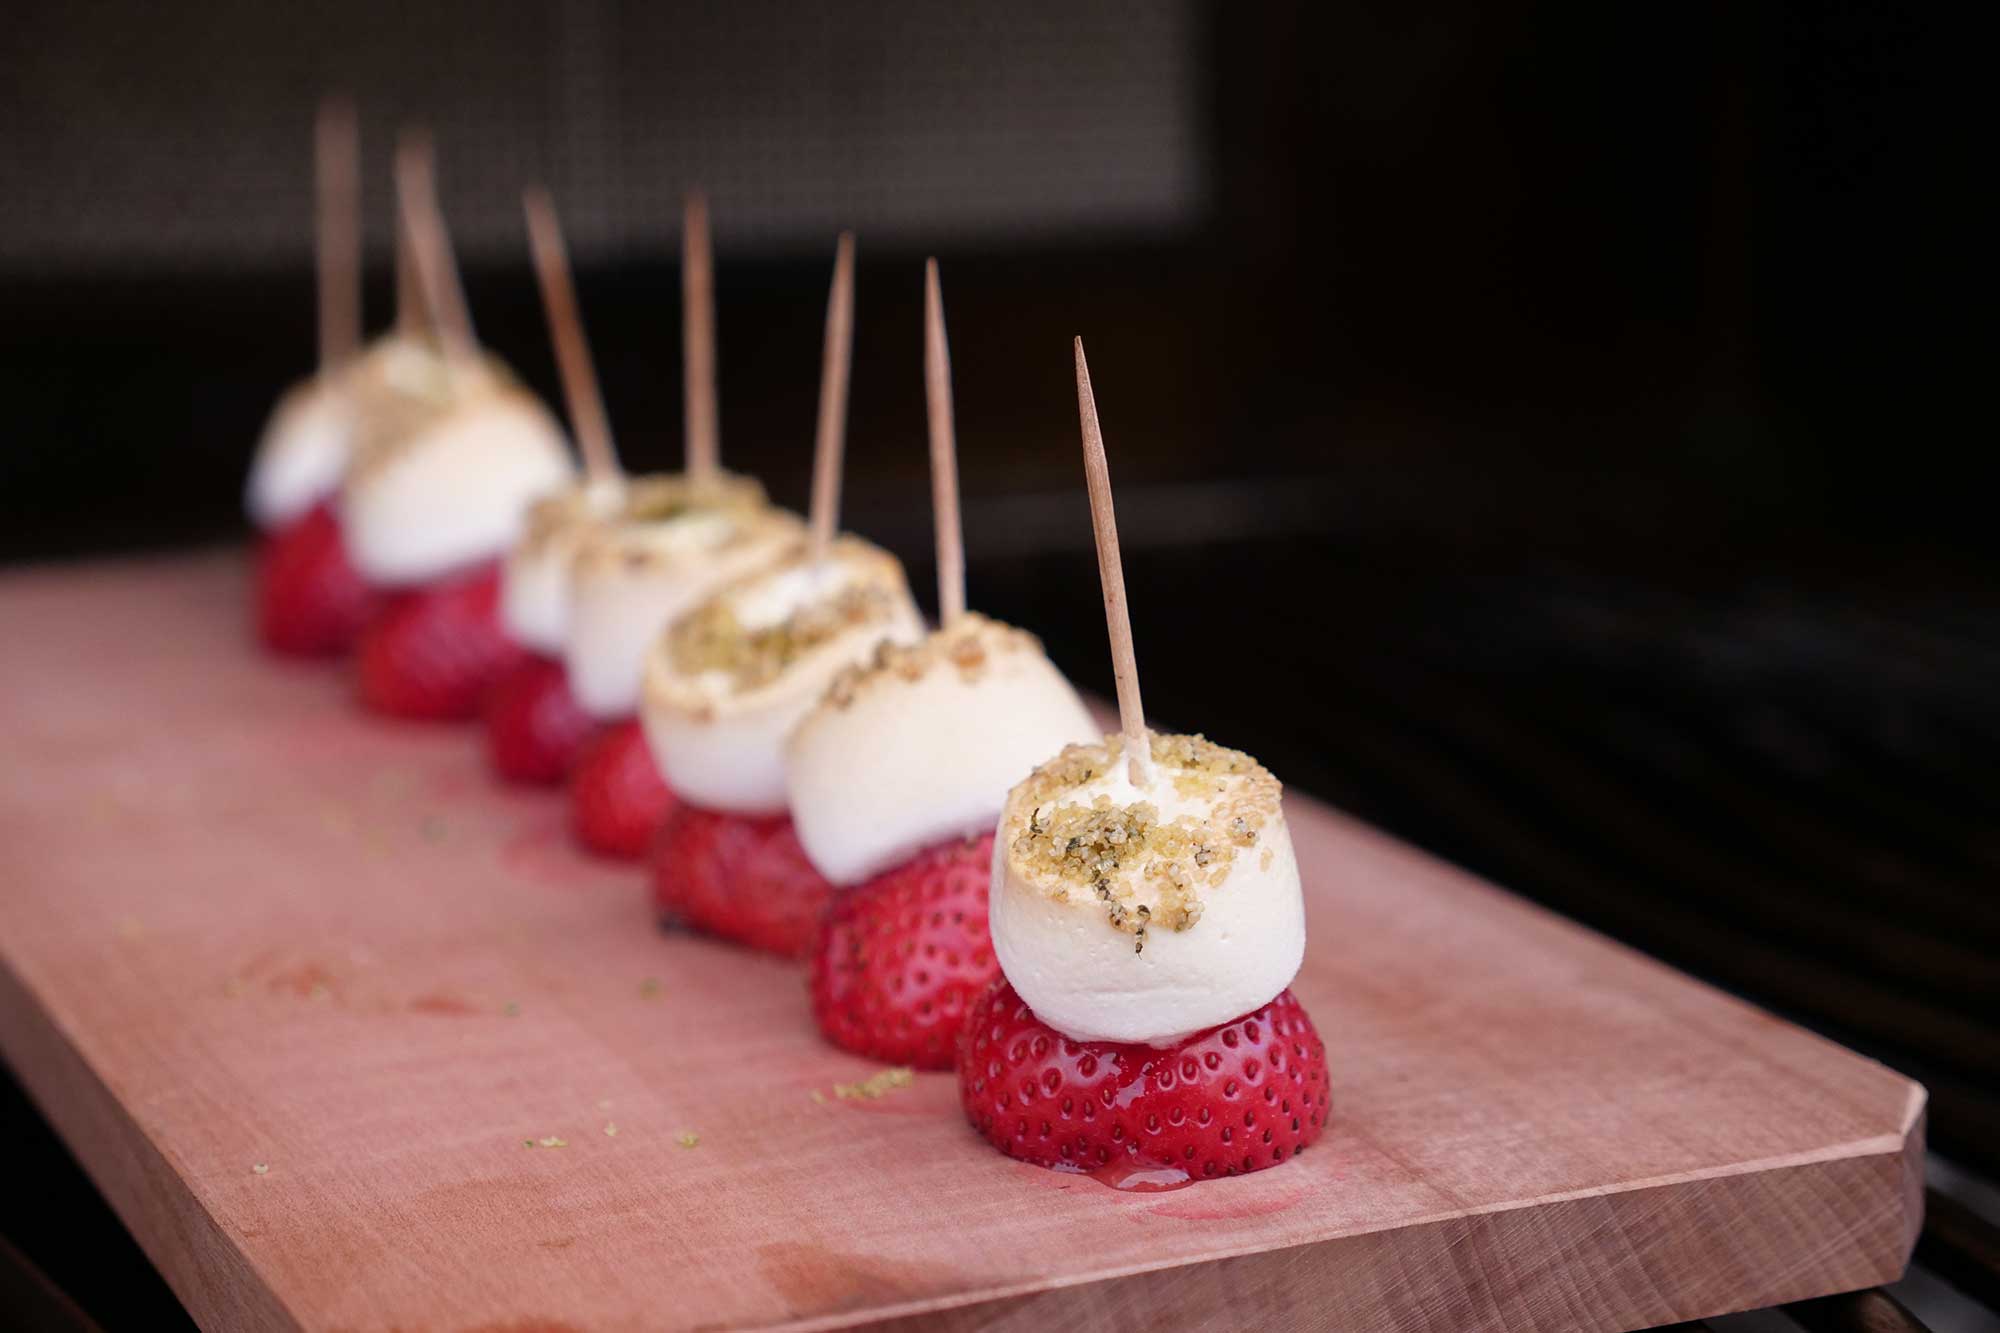 Die fertig gegrillten Marshmallow-Erdbeer-Spieße